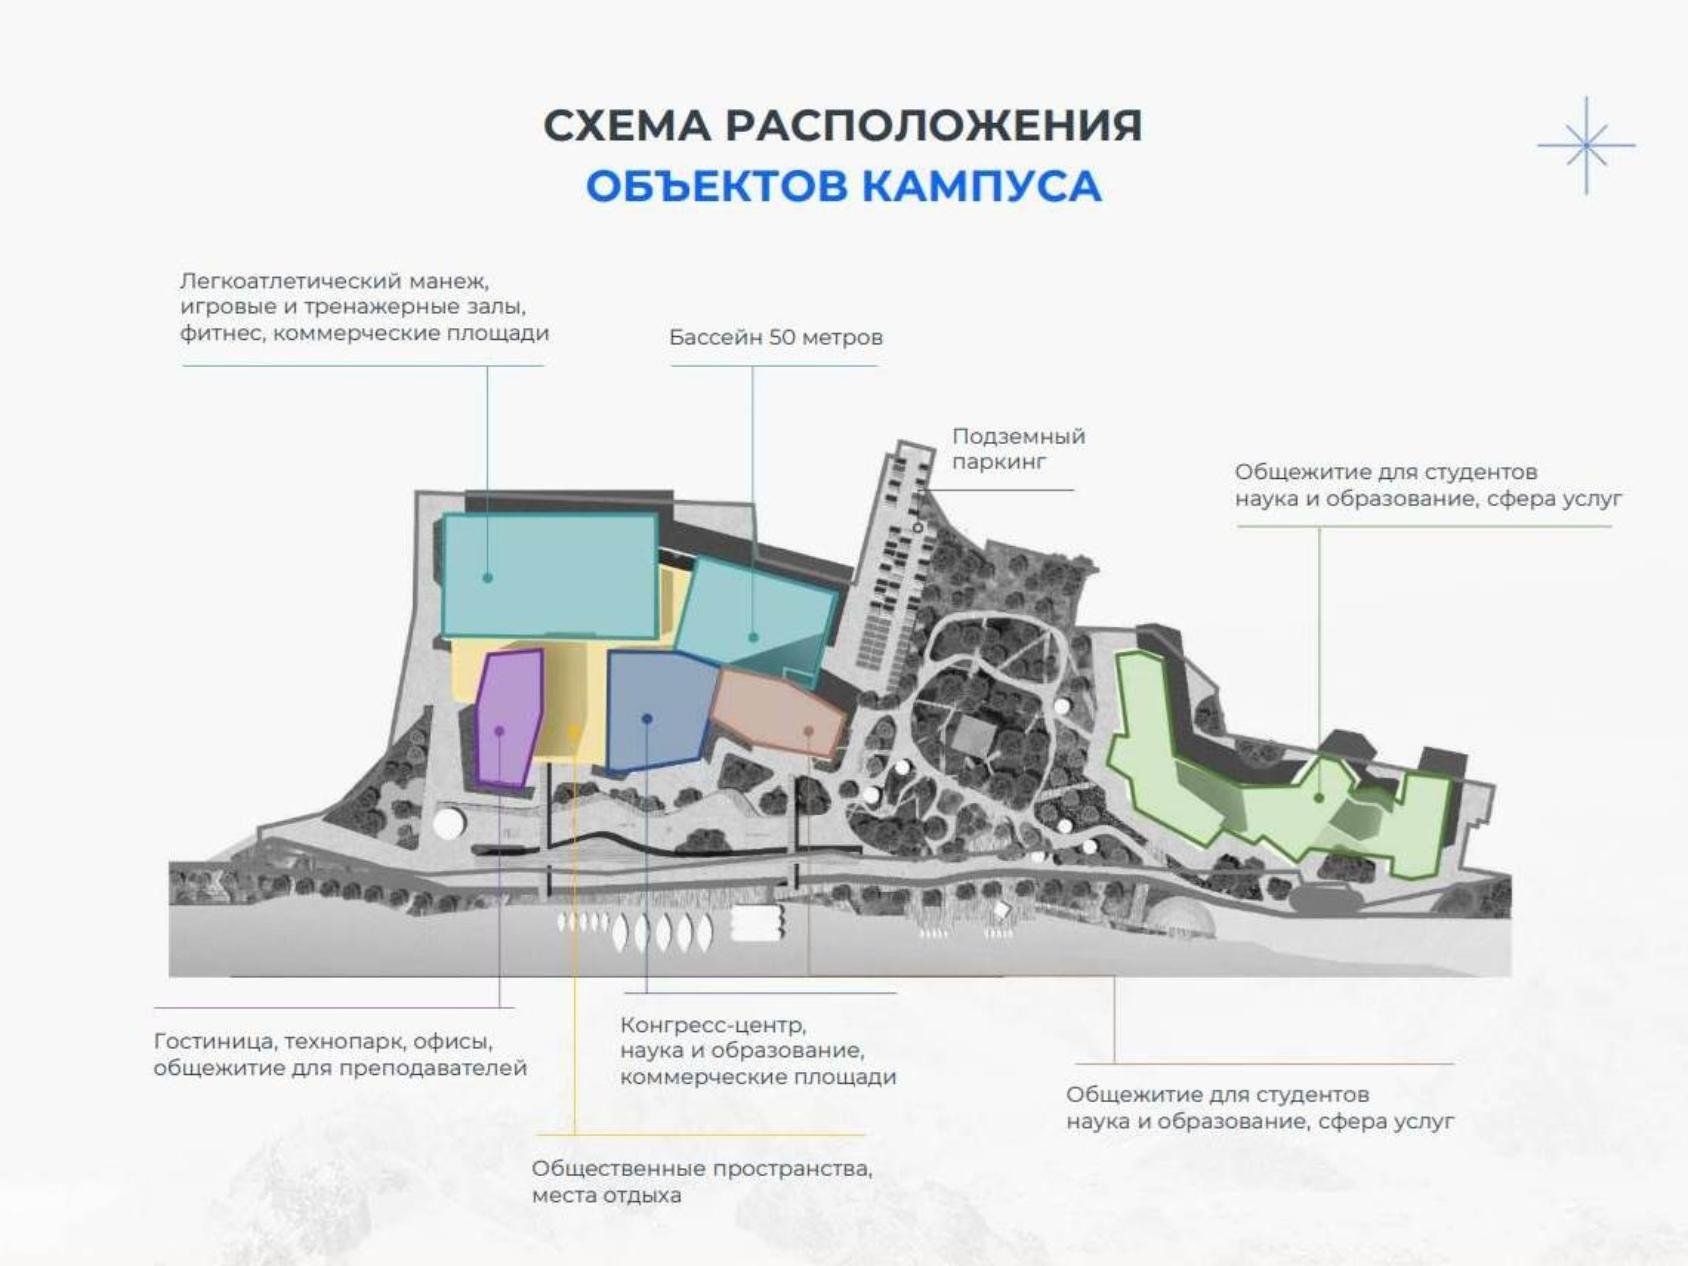 Инфографика предоставлена пресс-службой администрации Архангельска